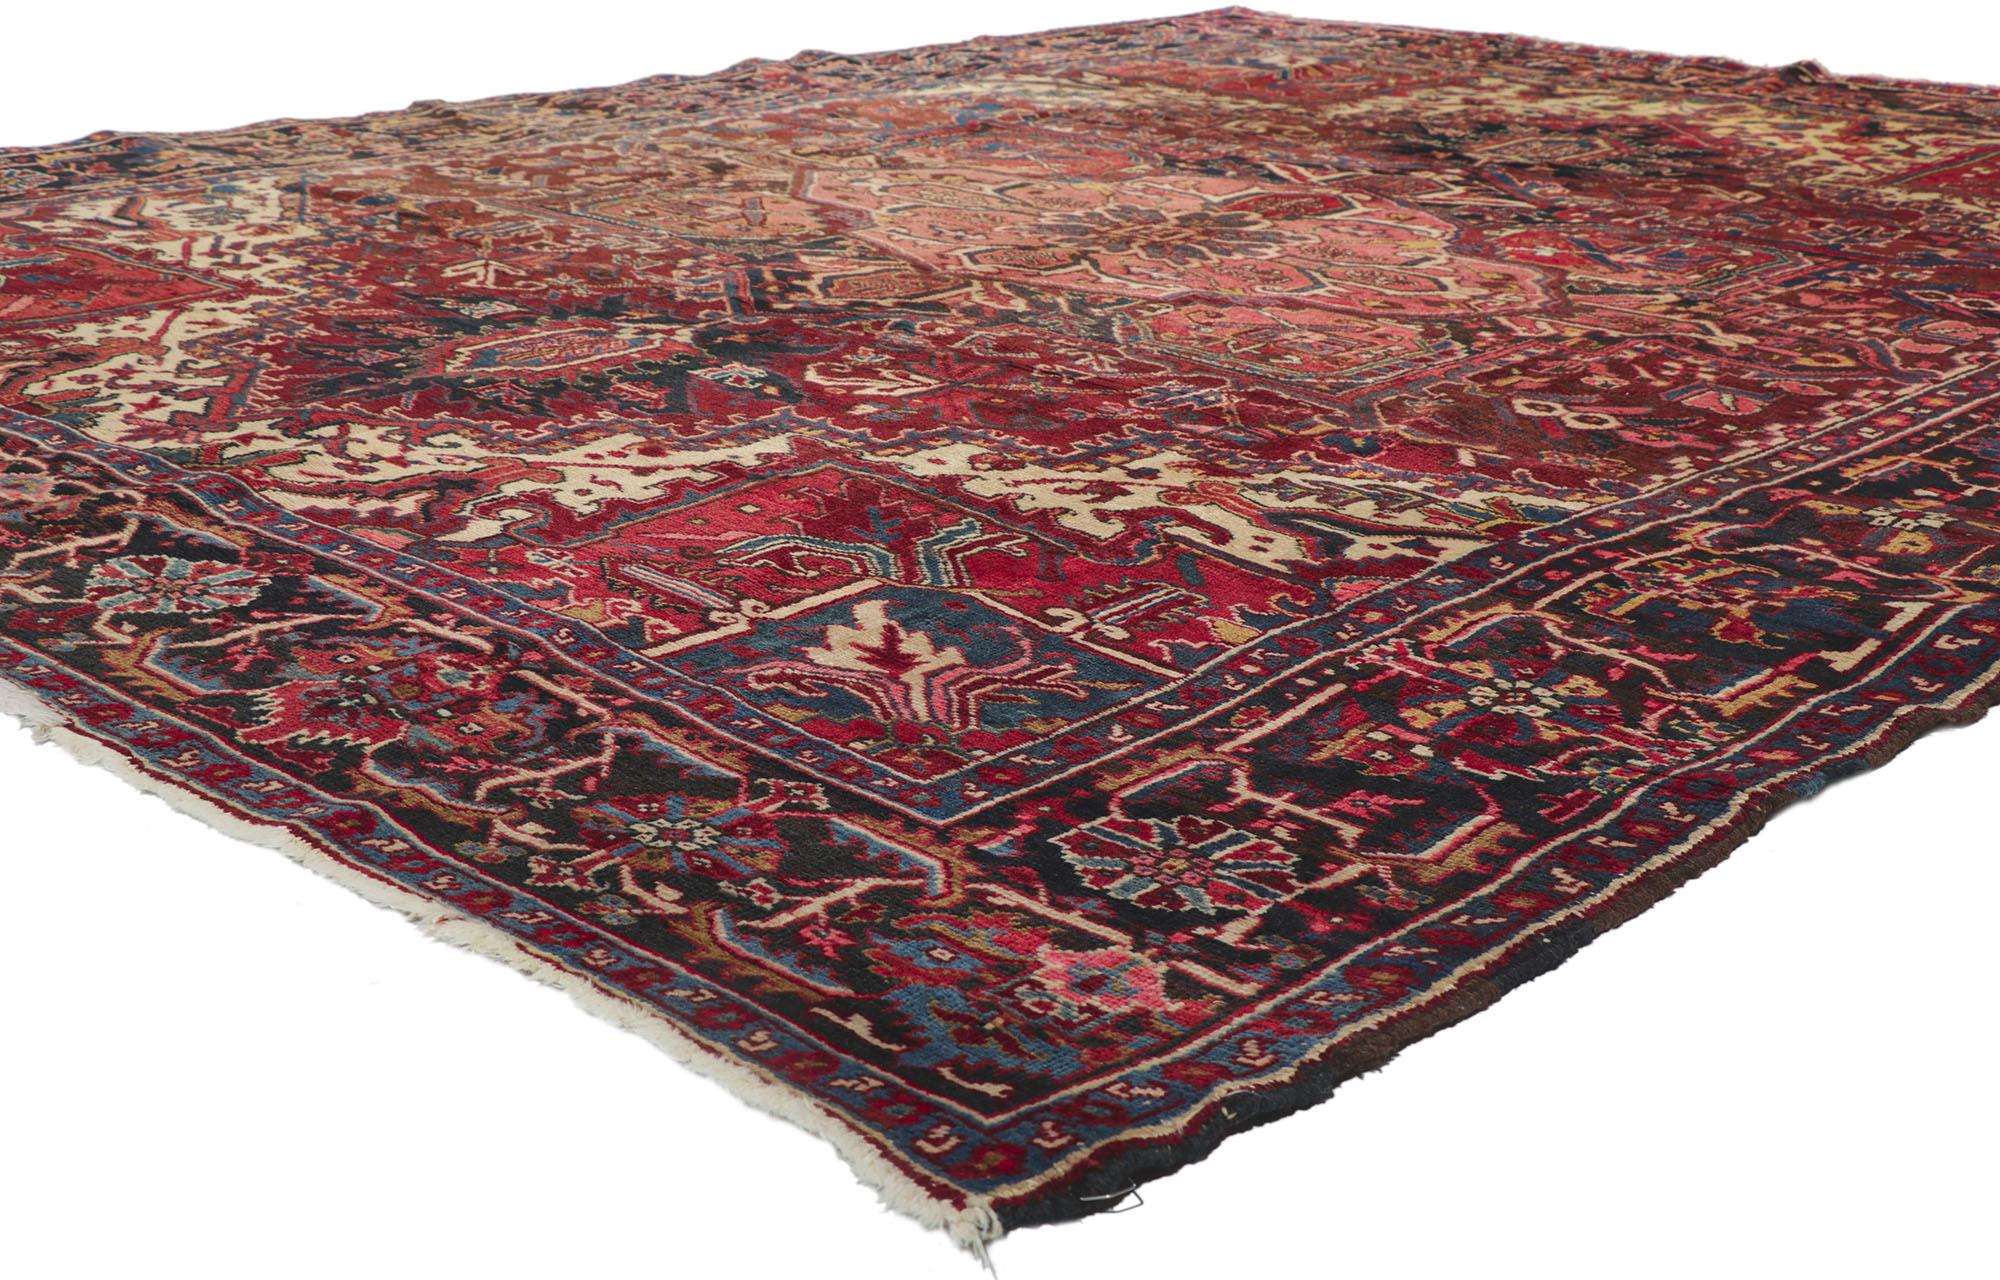 78182 antique Persian Heriz rug, 08'05 x 10'07.